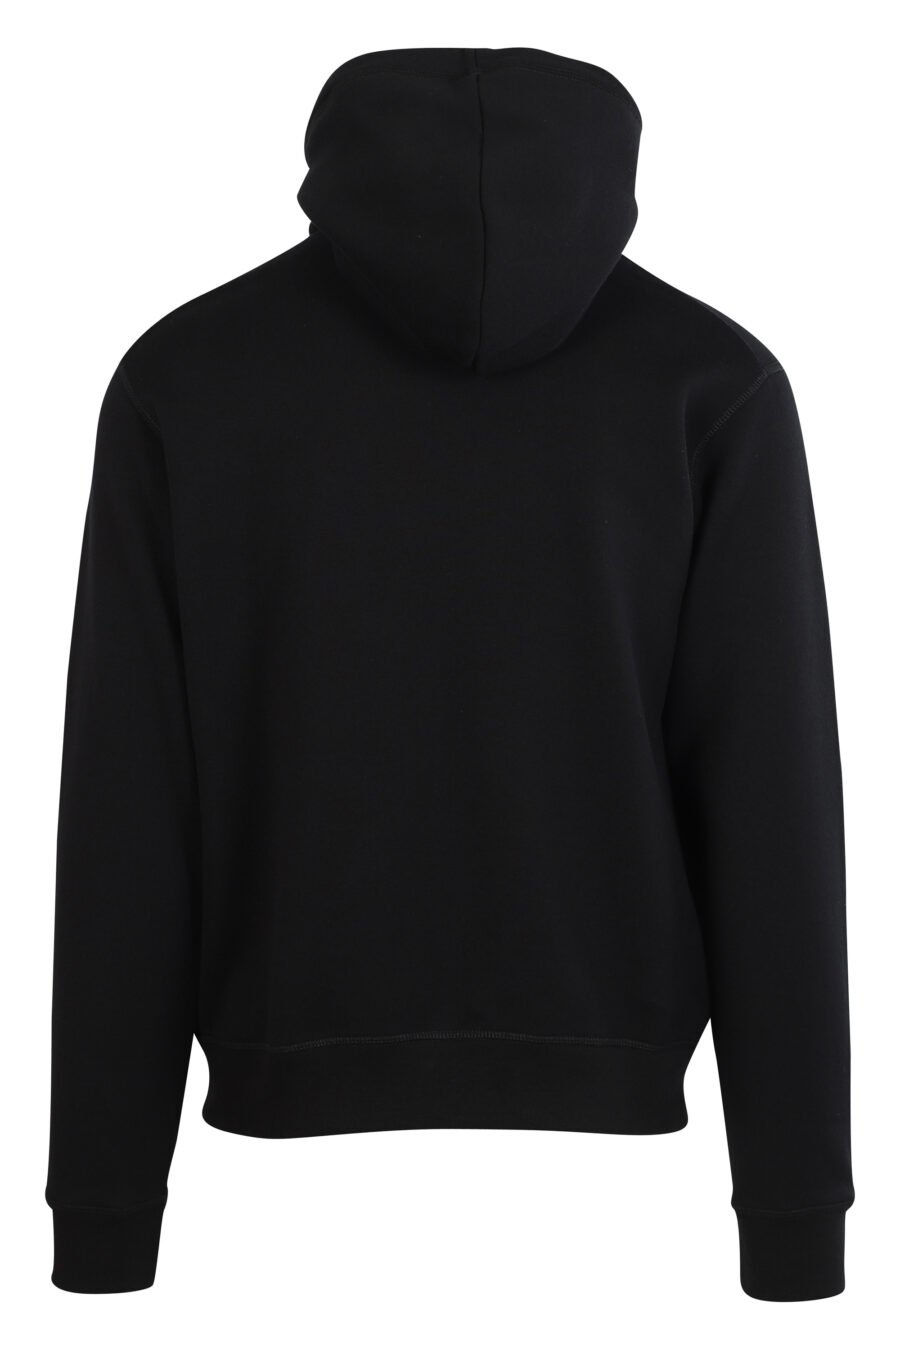 Black hooded sweatshirt with "pixeled" dog logo - 8054148006716 2